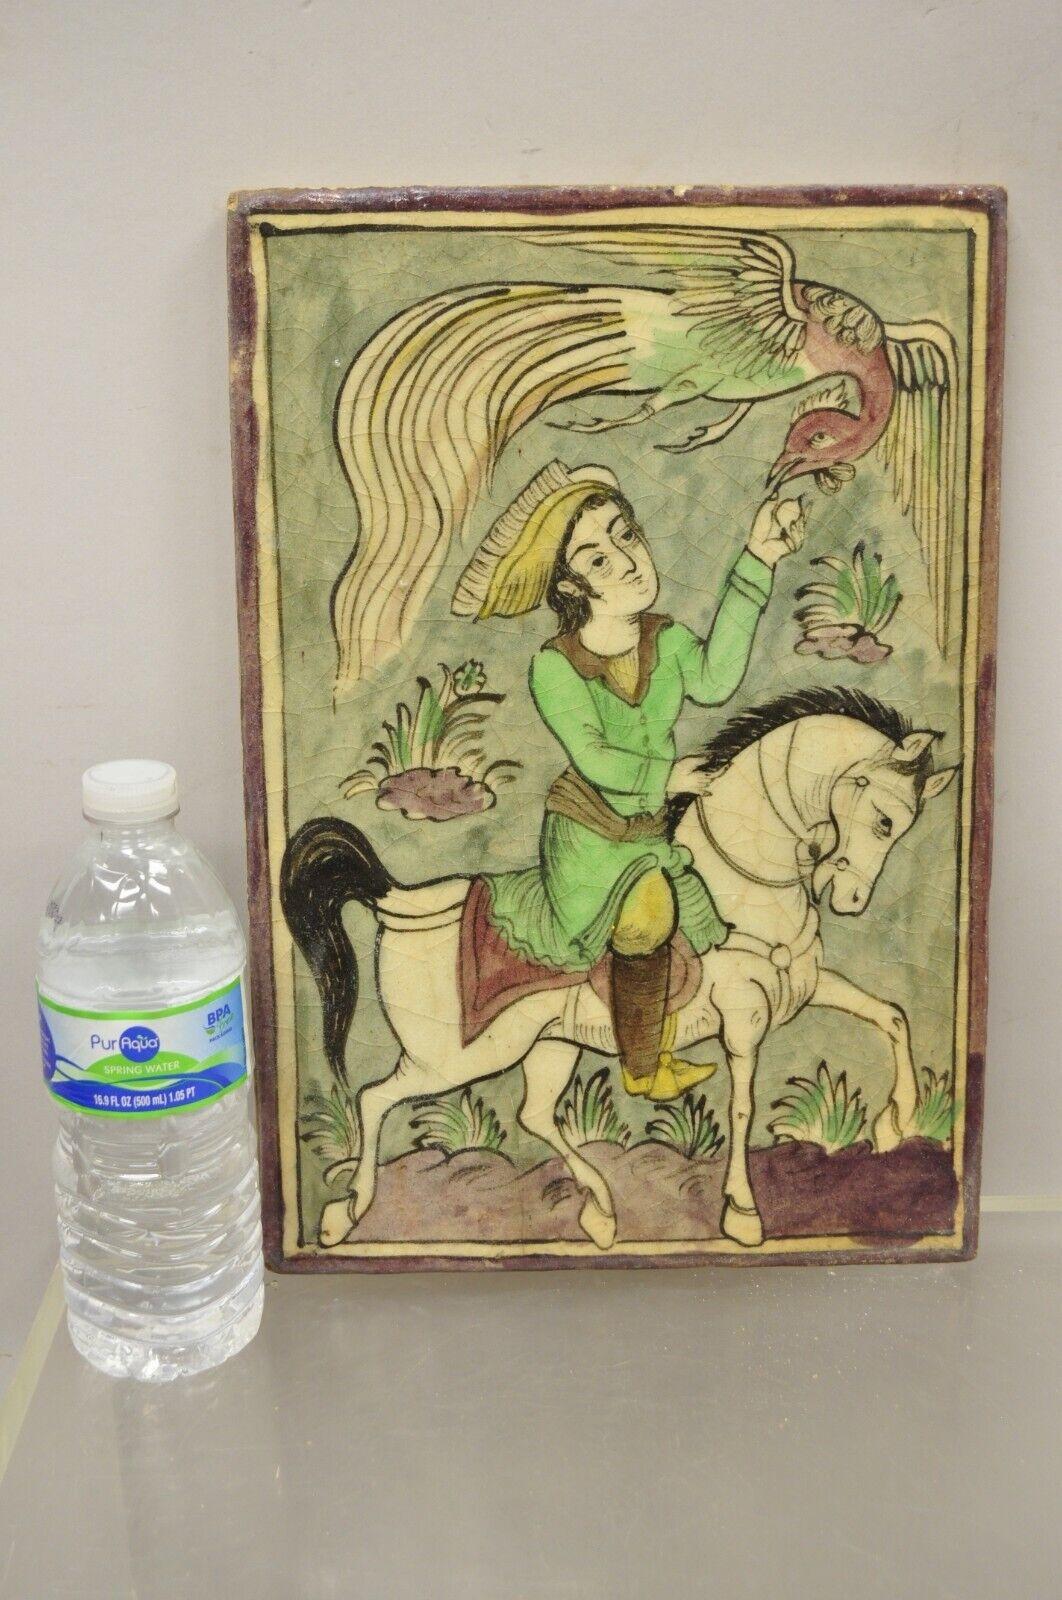 Antique Persian Iznik Qajar Style Ceramic Tile Tile Green Horse Rider and Phoenix Bird C2. Finition originale émaillée craquelée, construction en céramique lourde, détails très impressionnants, style et forme magnifiques. Idéal pour être monté comme